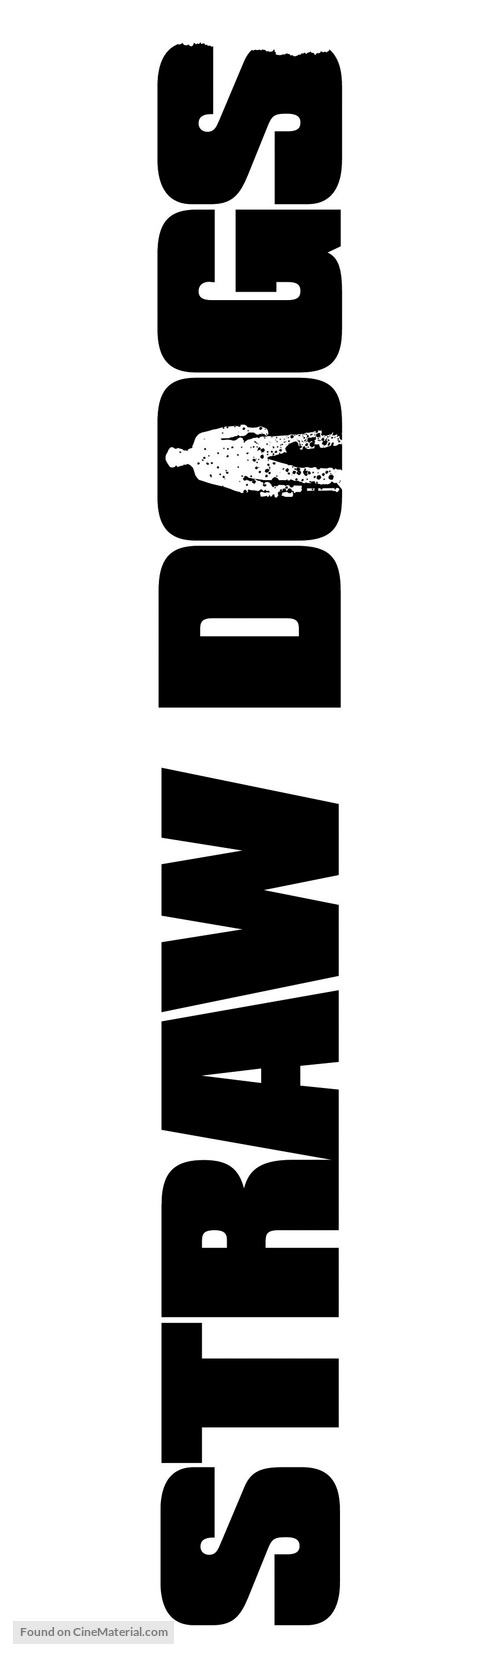 Straw Dogs - Logo